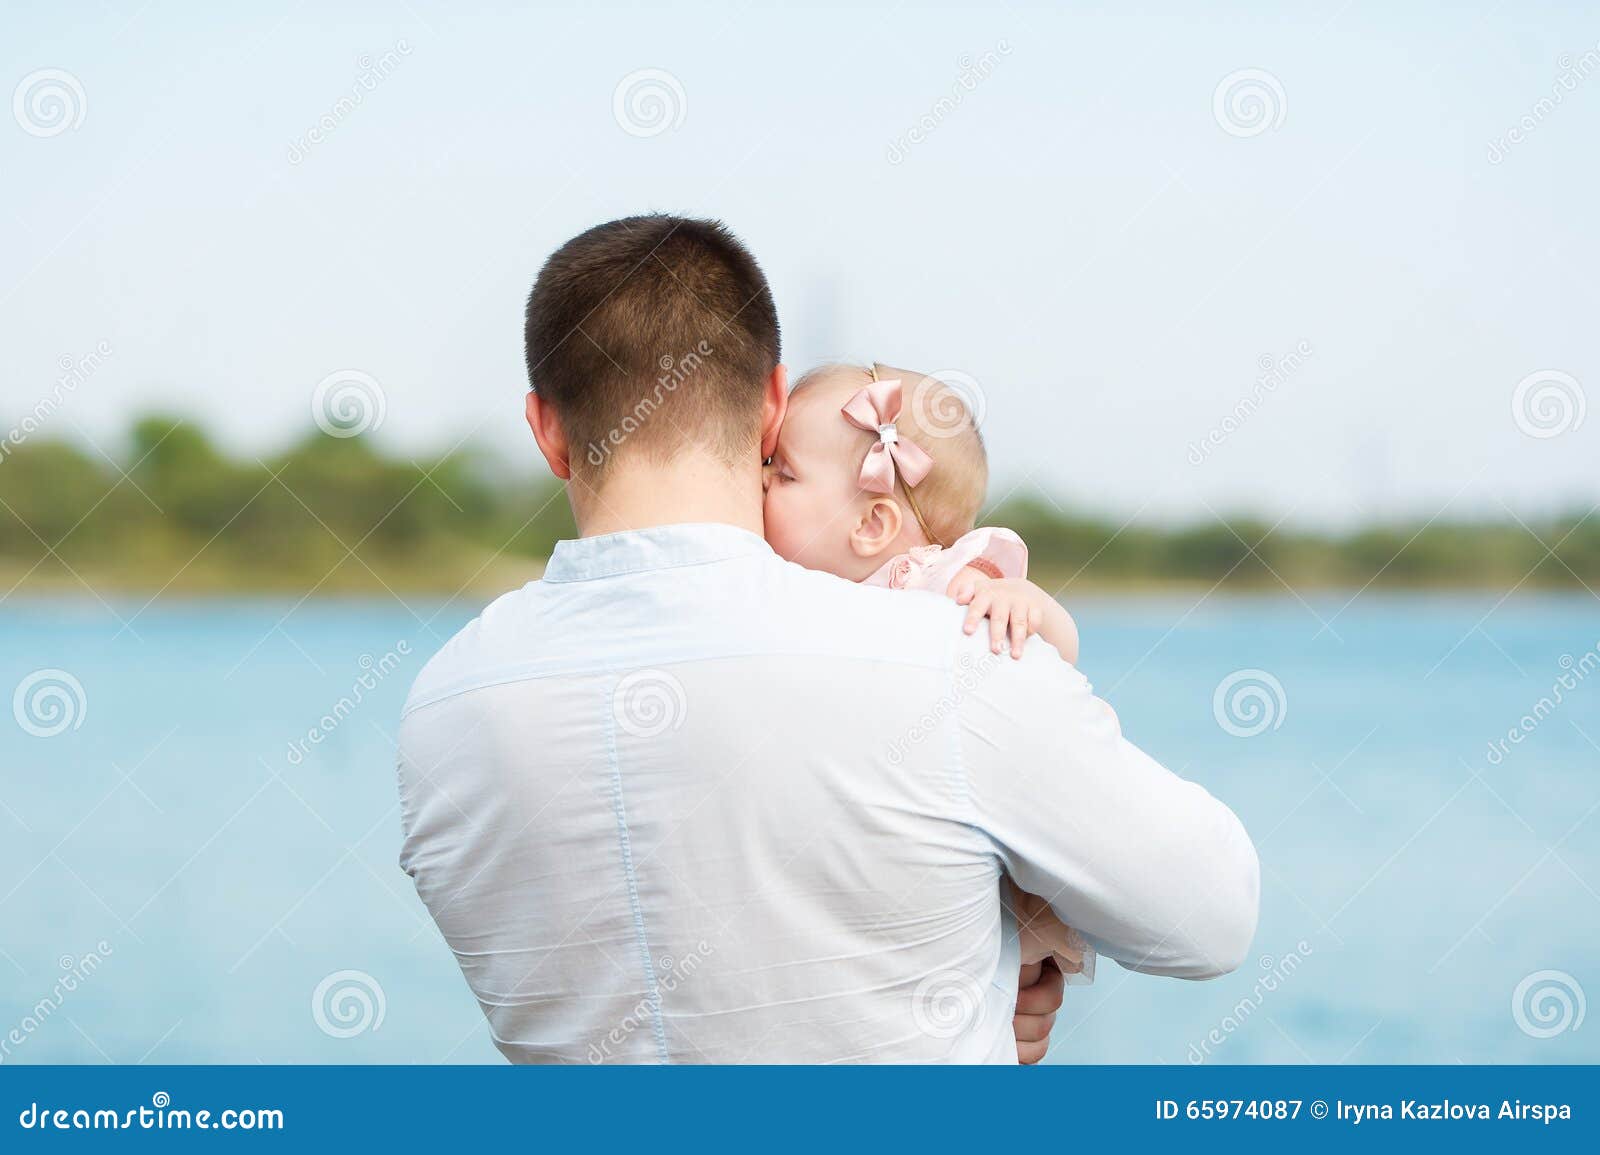 Папа держит дочку. Мужчина с ребенком на руках со спины. Мужчина держит ребенка на руках. Папа с ребенком на руках со спины. Ребенок на руках у папы.